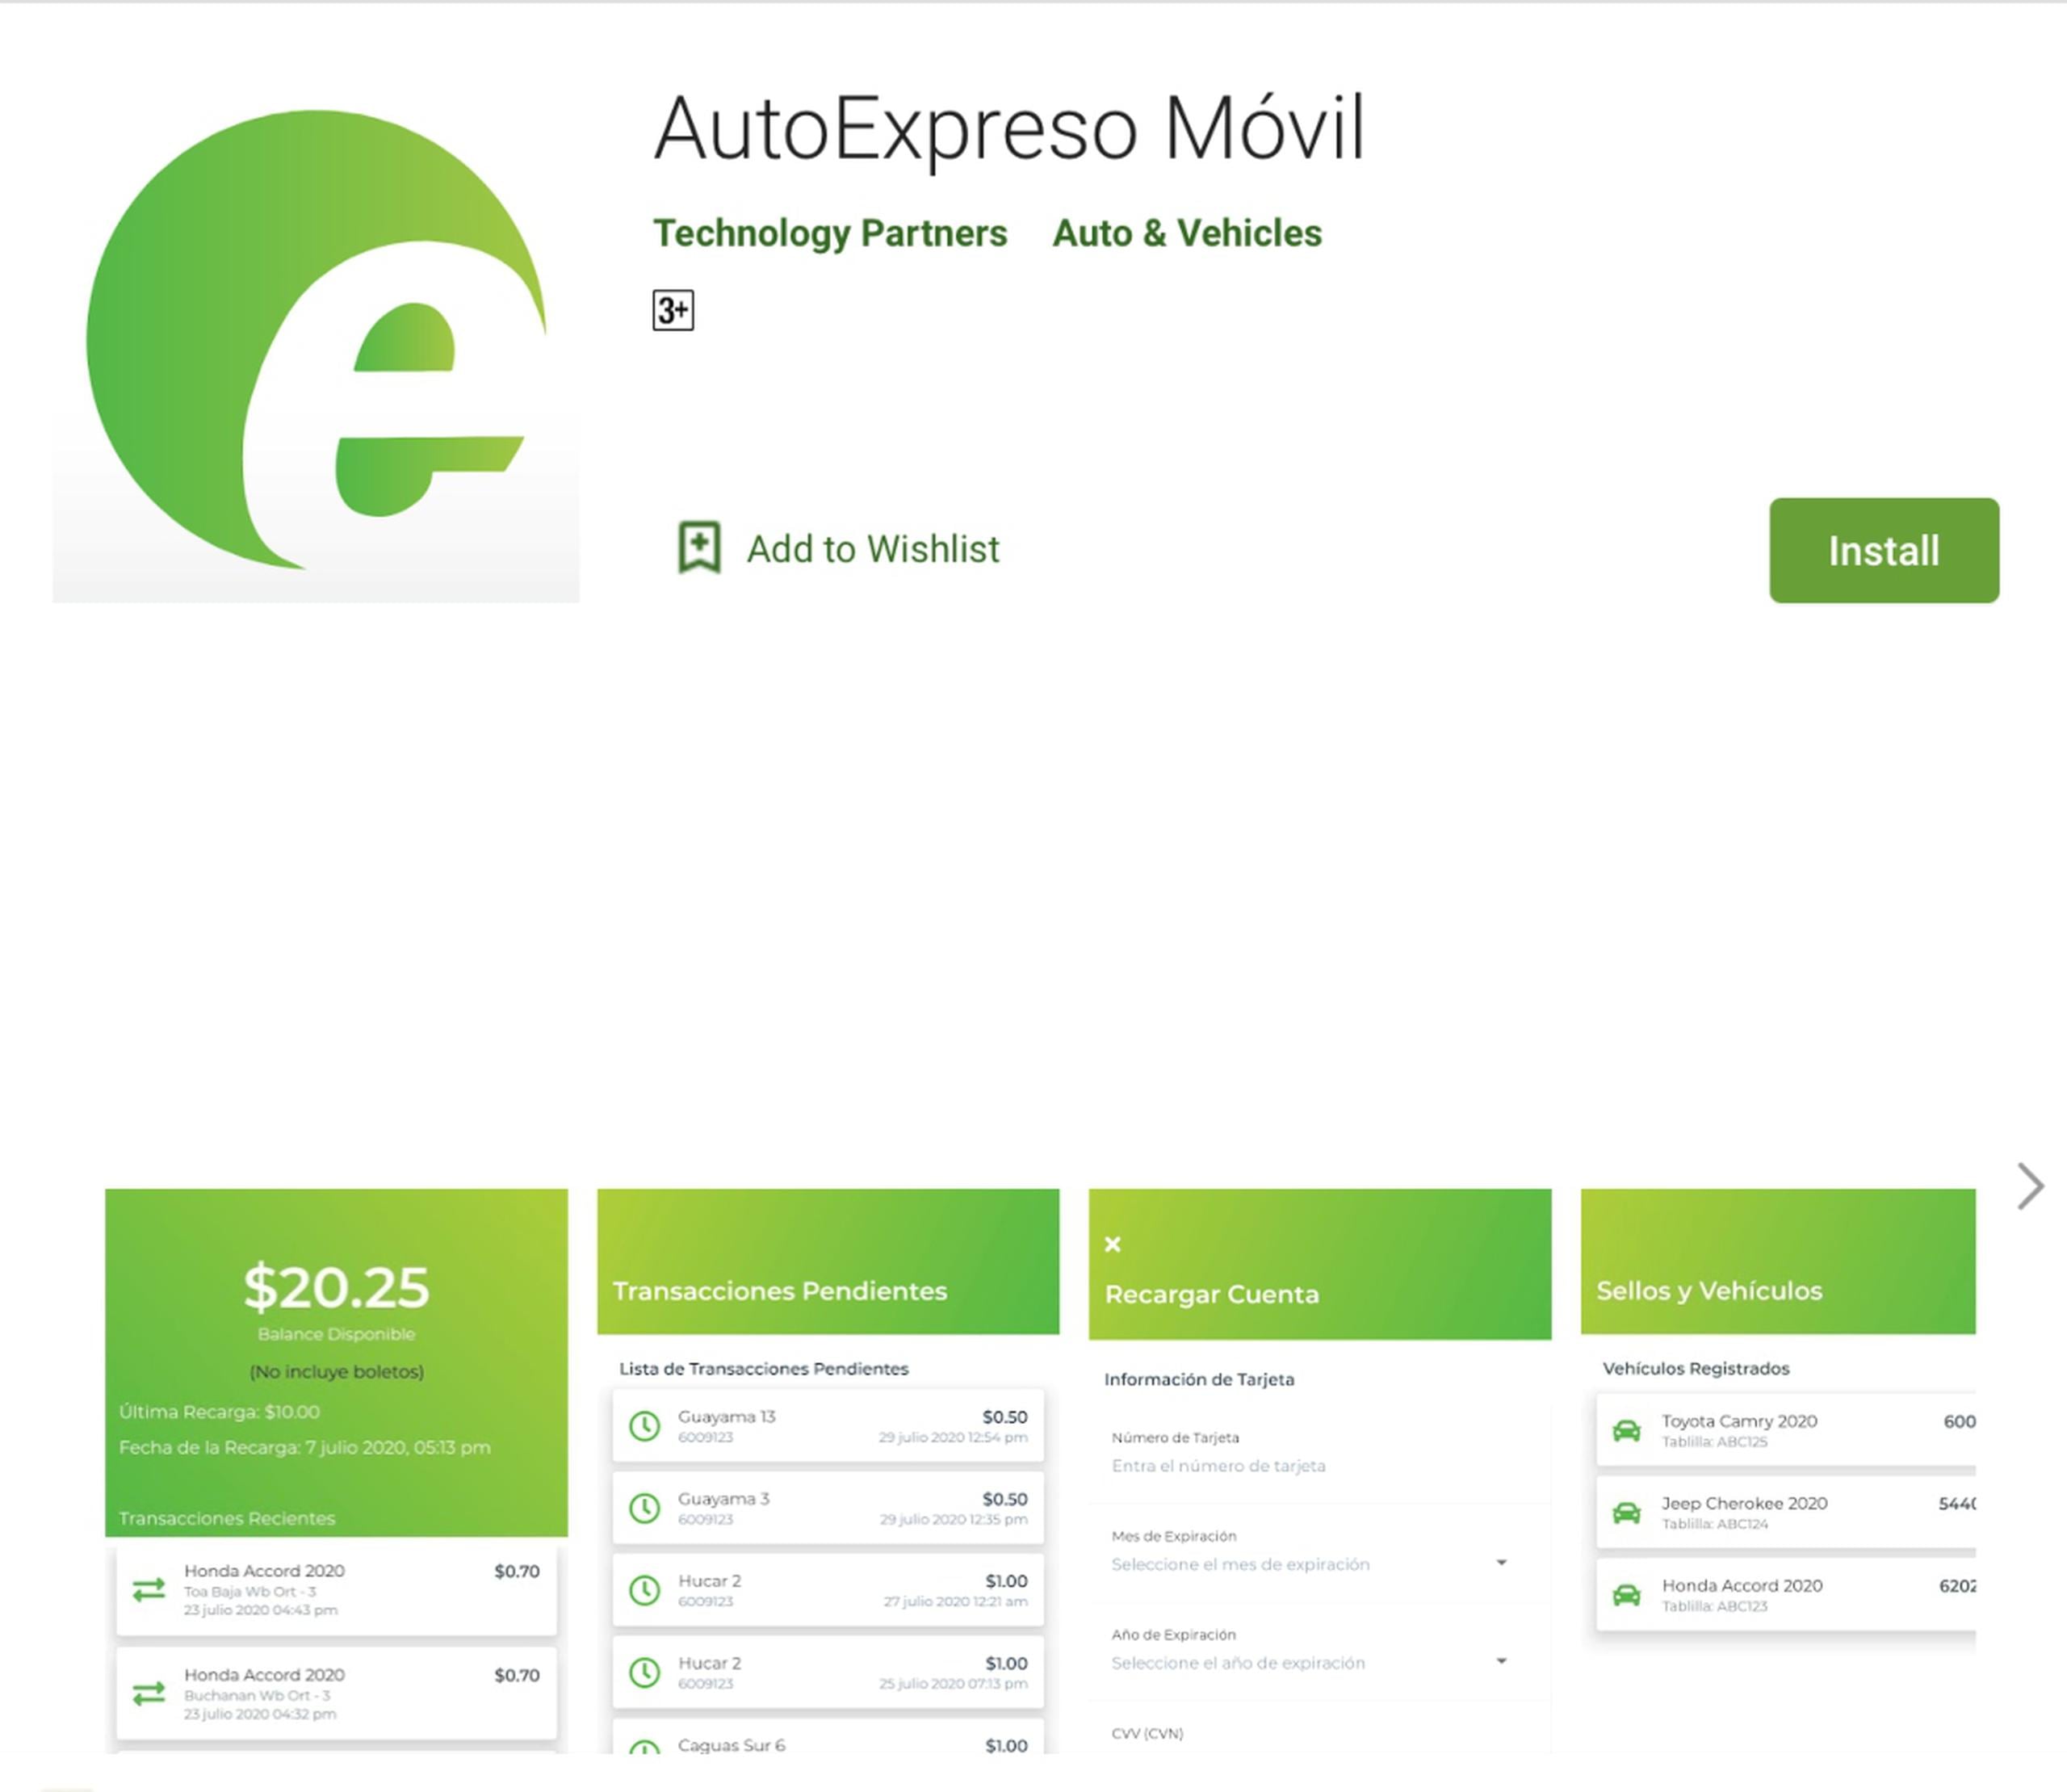 La Autoridad de Carreteras y Transportación lanzó una aplicación para que usuarios puedan pagar sus multas y recargar sus cuentas de AutoExpreso desde sus celulares.